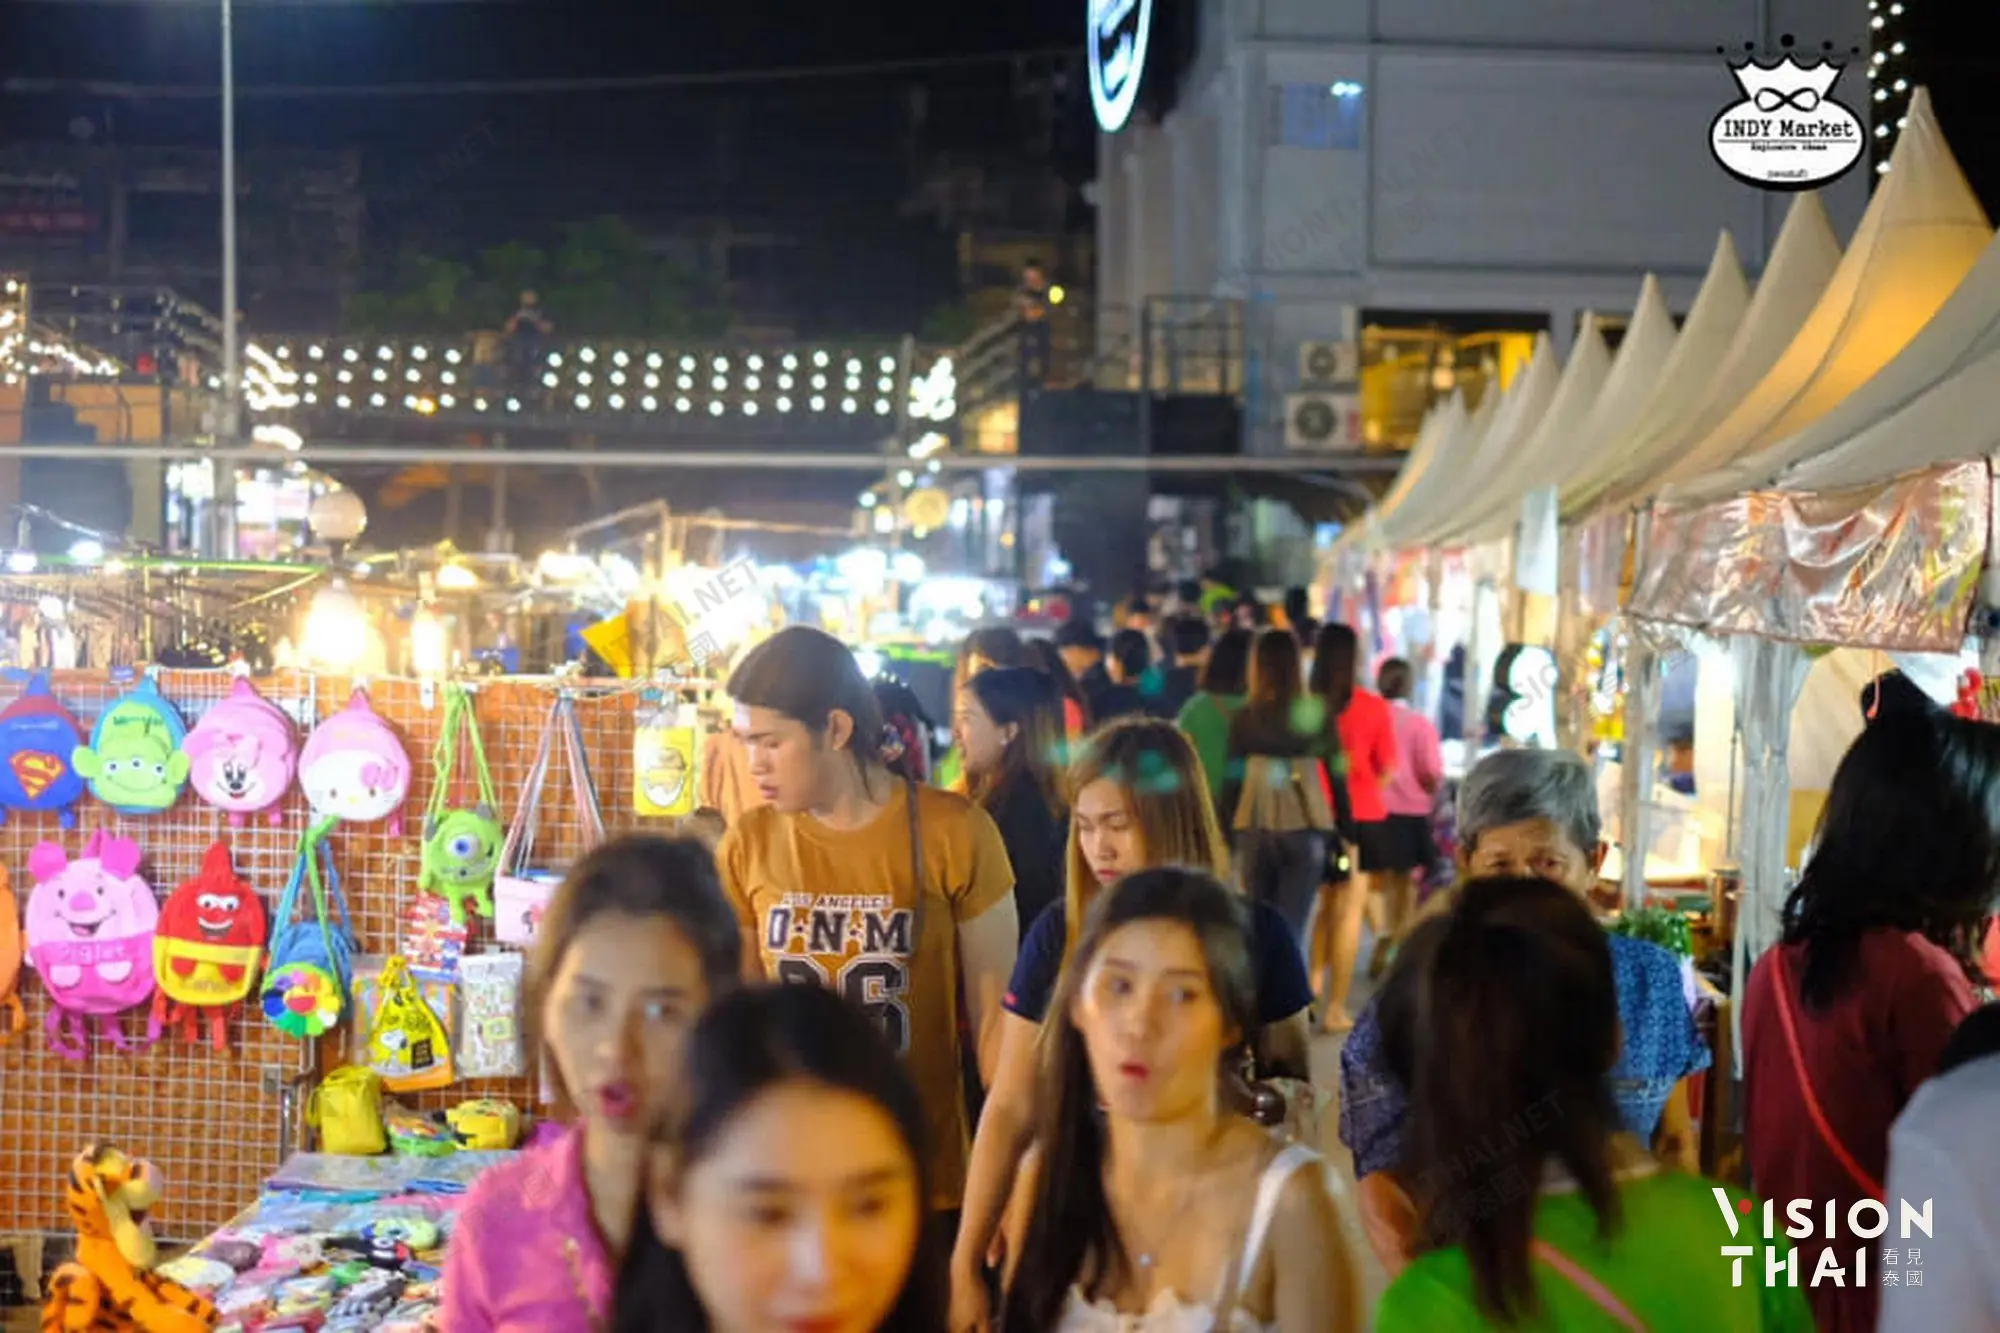 印地夜市(Indy Market)是比较小众的曼谷夜市，观光客较少，价格比市区内的夜市便宜（图片来源：网路）